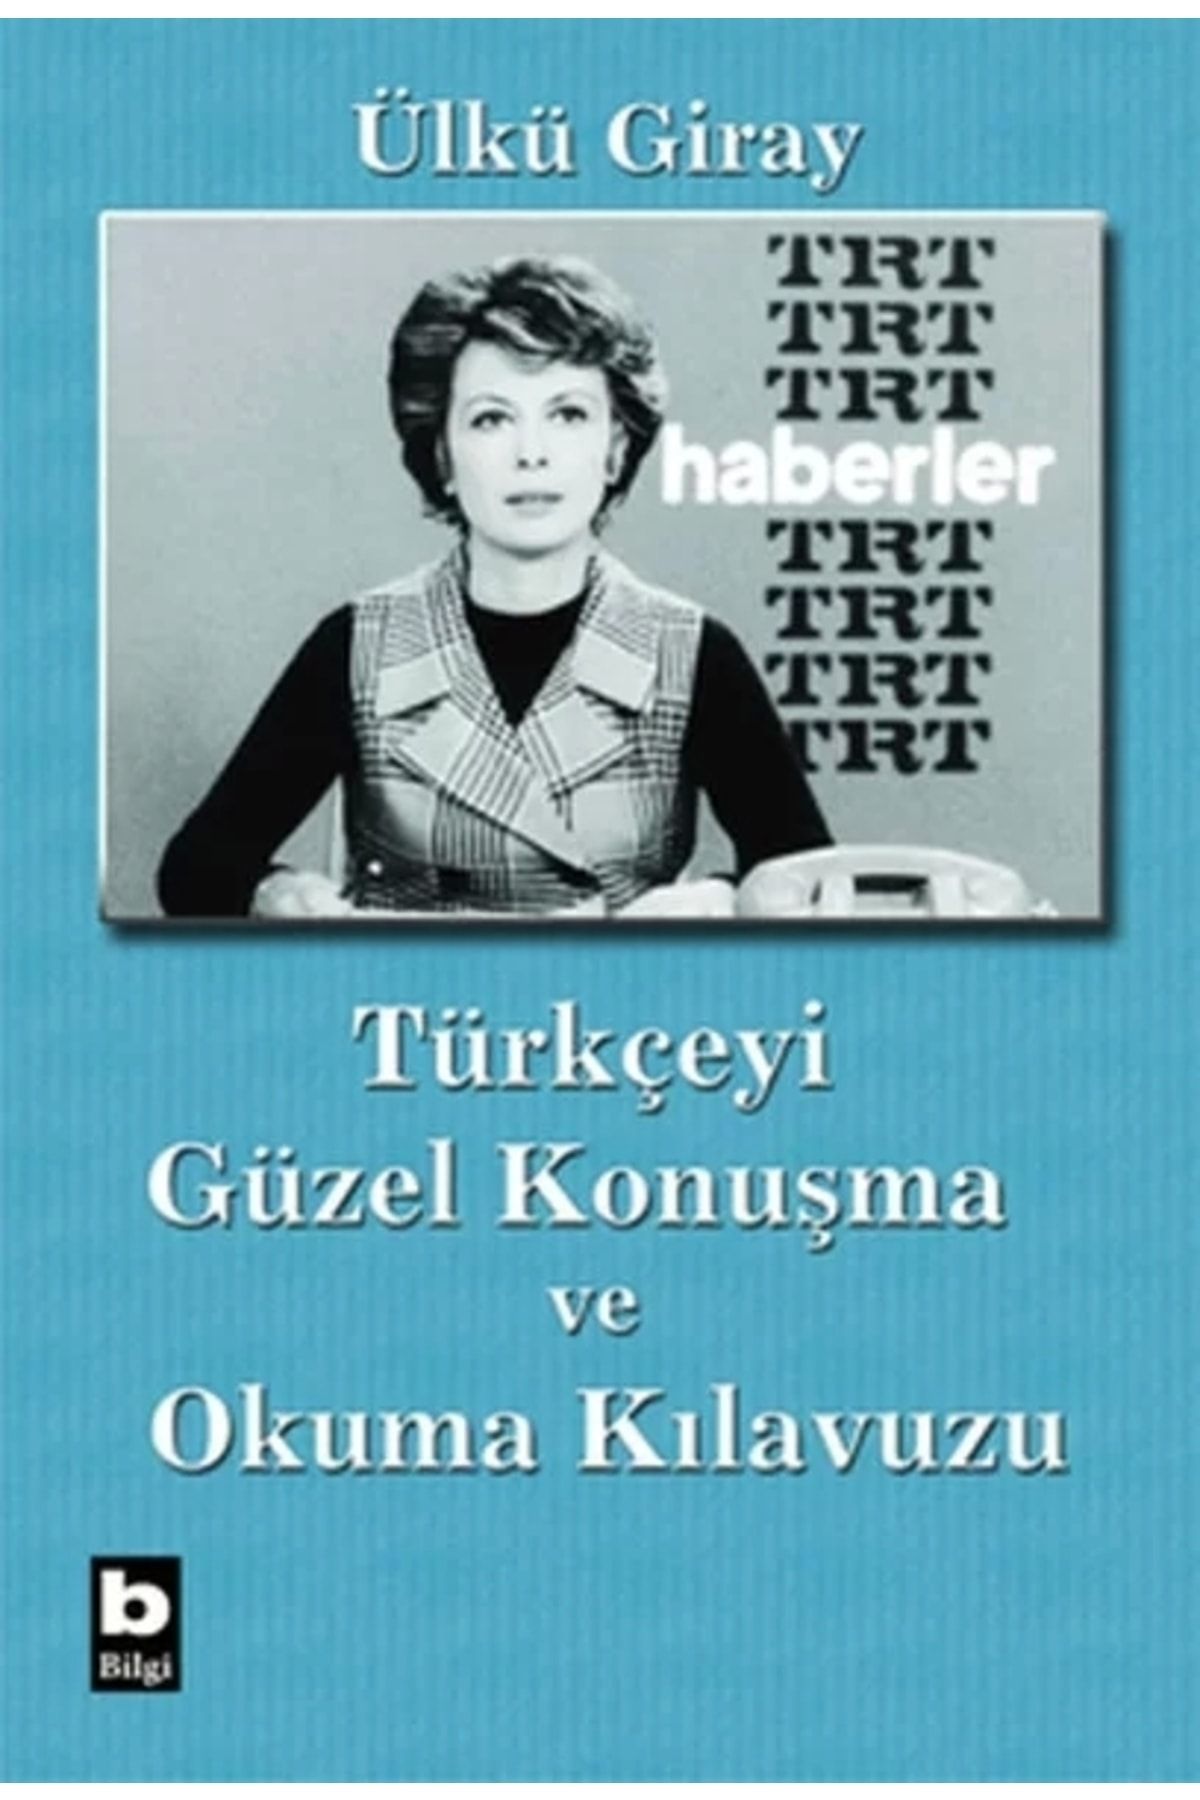 Bilgi Yayınları Türkçeyi Güzel Konuşma Ve Okuma Kılavuzu